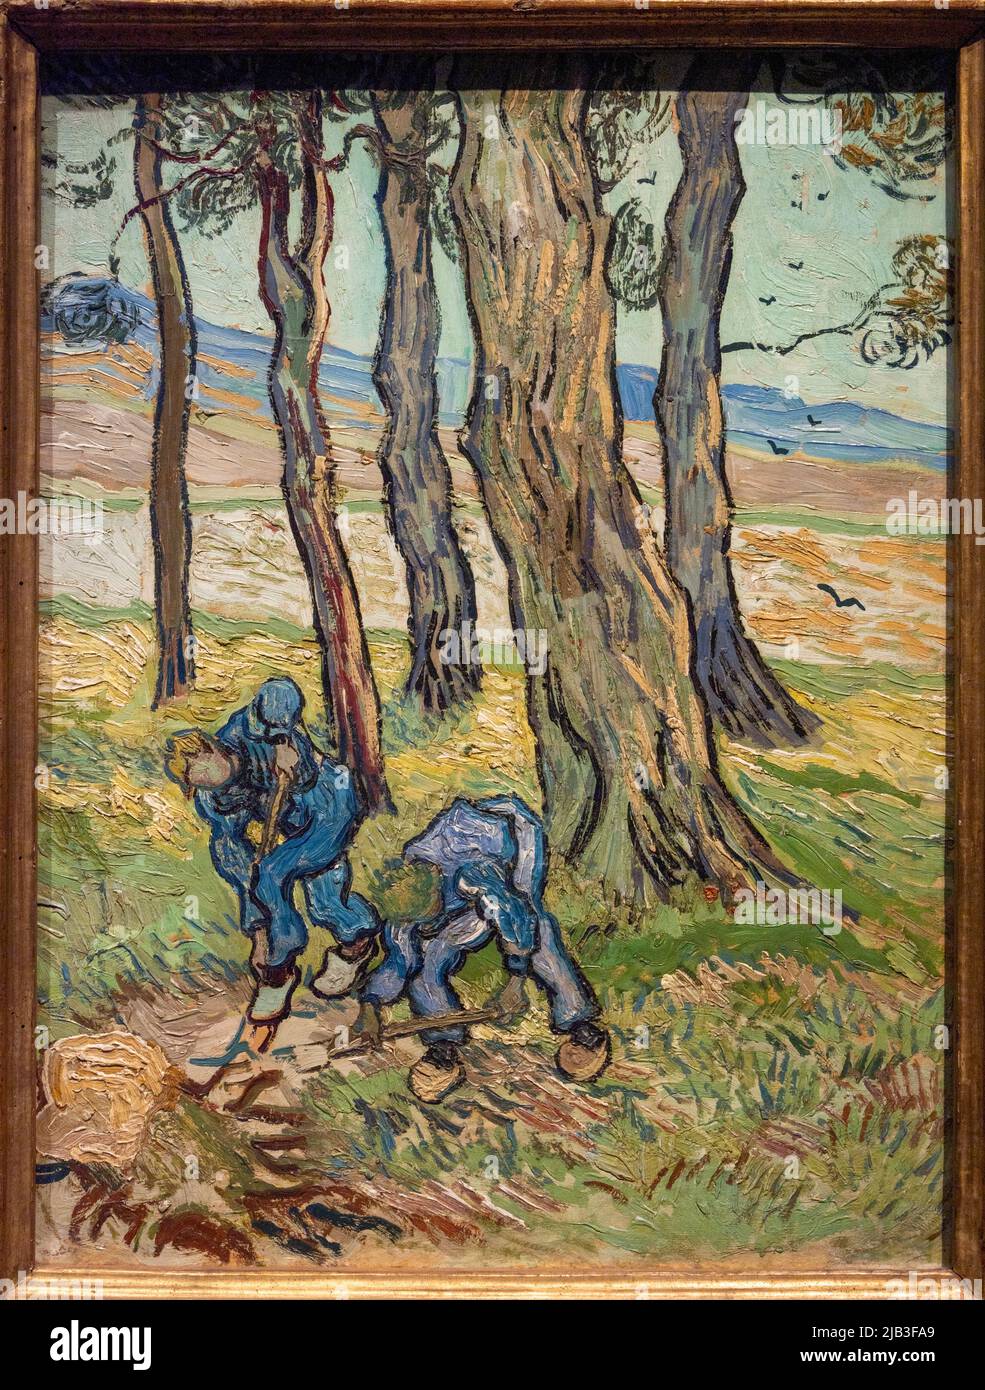 The Diggers, 1889, dipinto di Van Gogh, Detroit Institute of Art, Michigan, USA Foto Stock